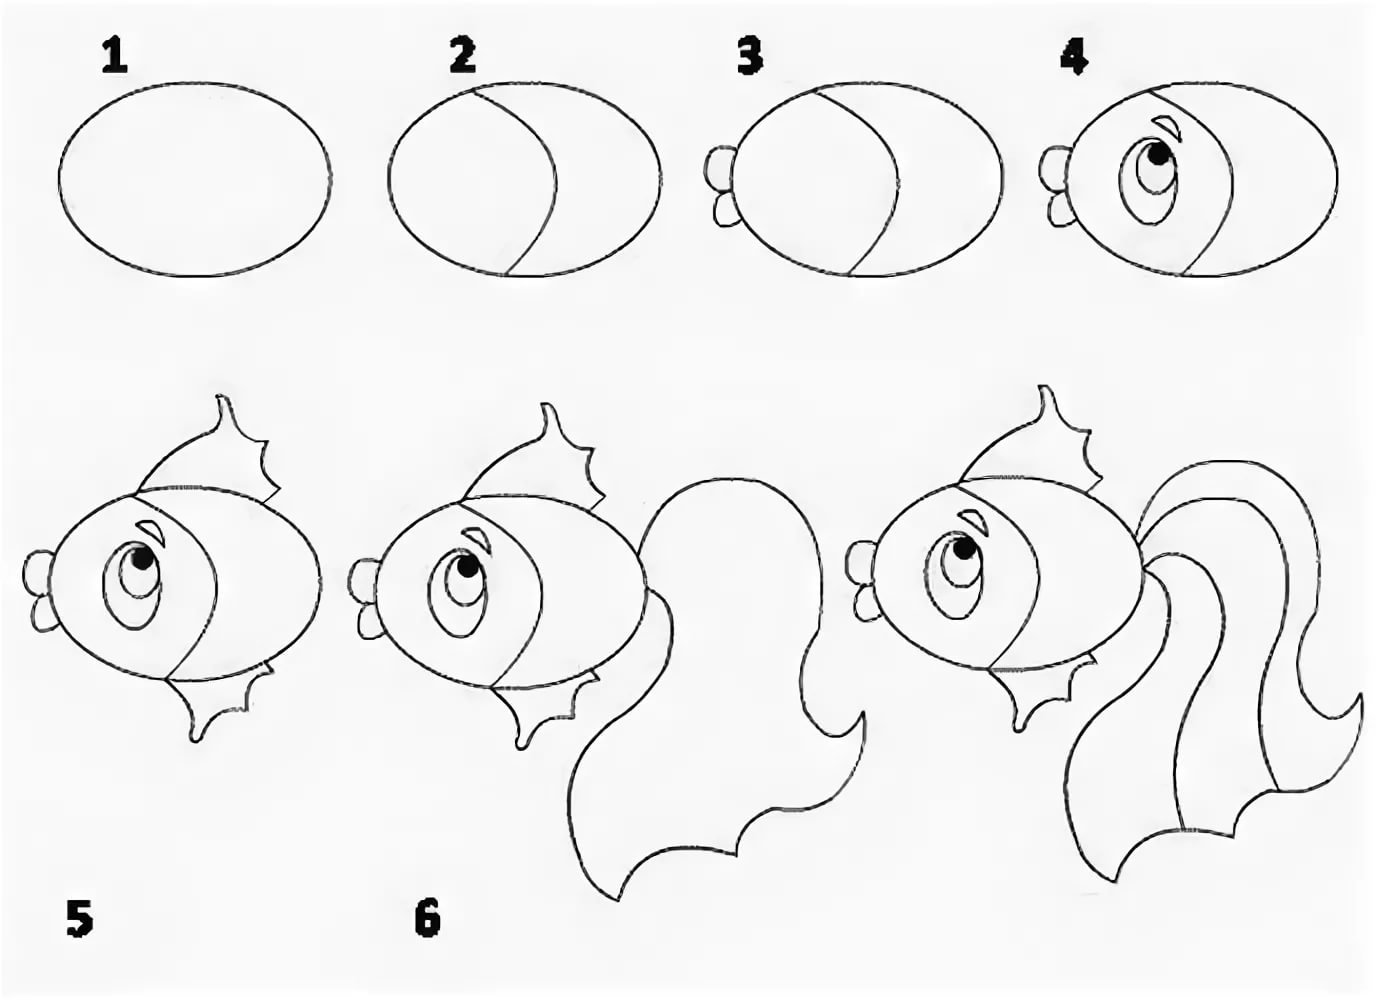 Нарисовать рыбка – Как нарисовать золотую рыбку поэтапно. Пошаговый урок рисования рыбки